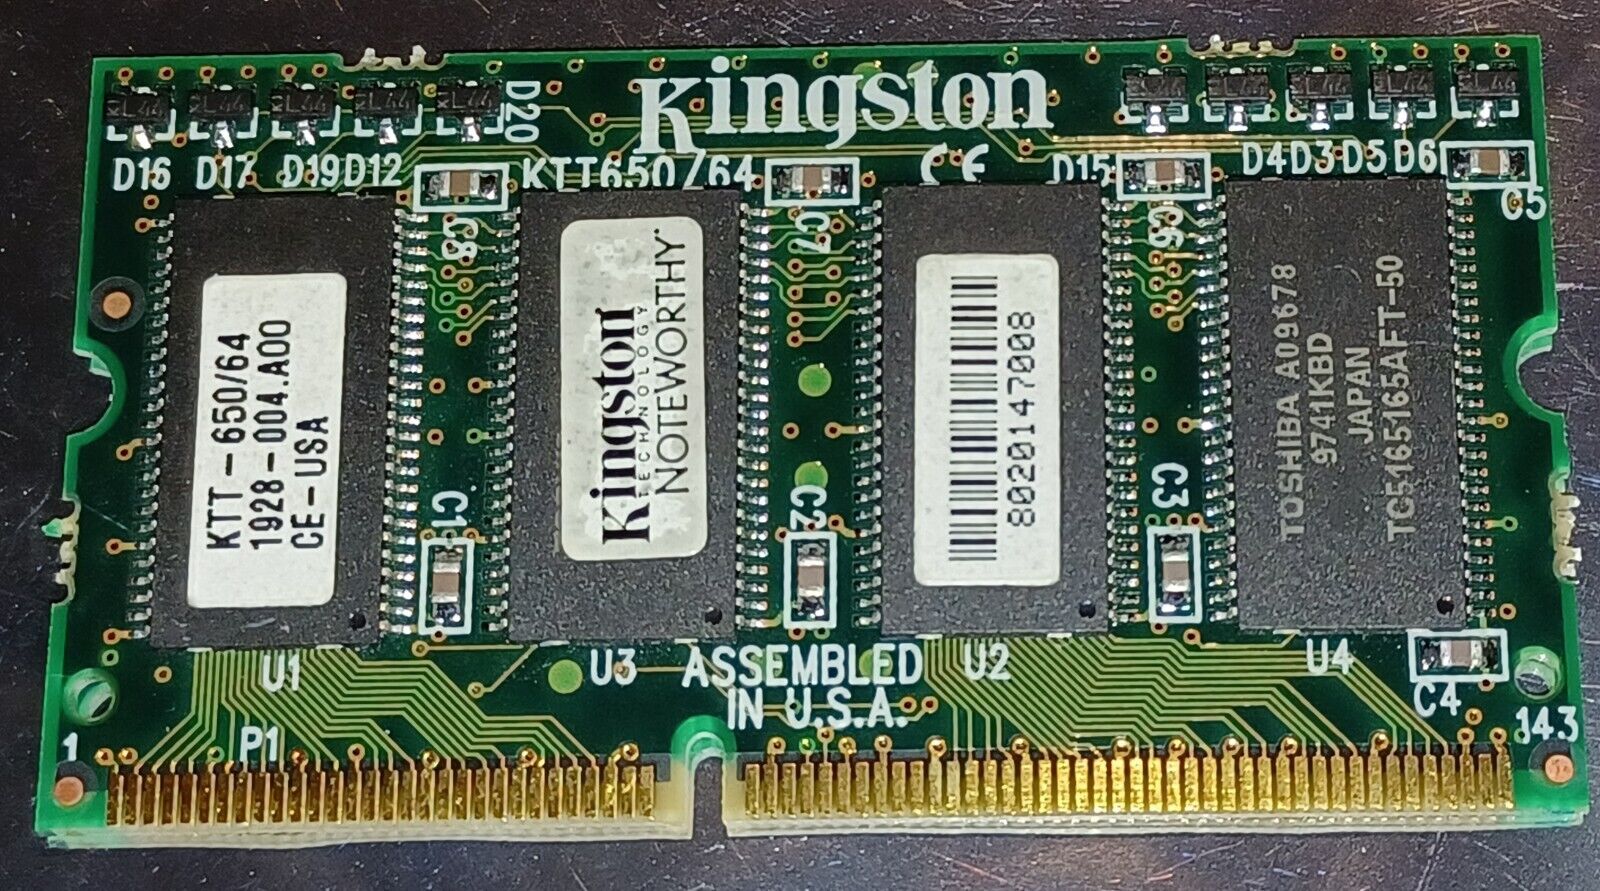 Kingston KTT-650/64, 64MB EDO non-ECC 60ns 144-Pin Double-Sided SODIMM 